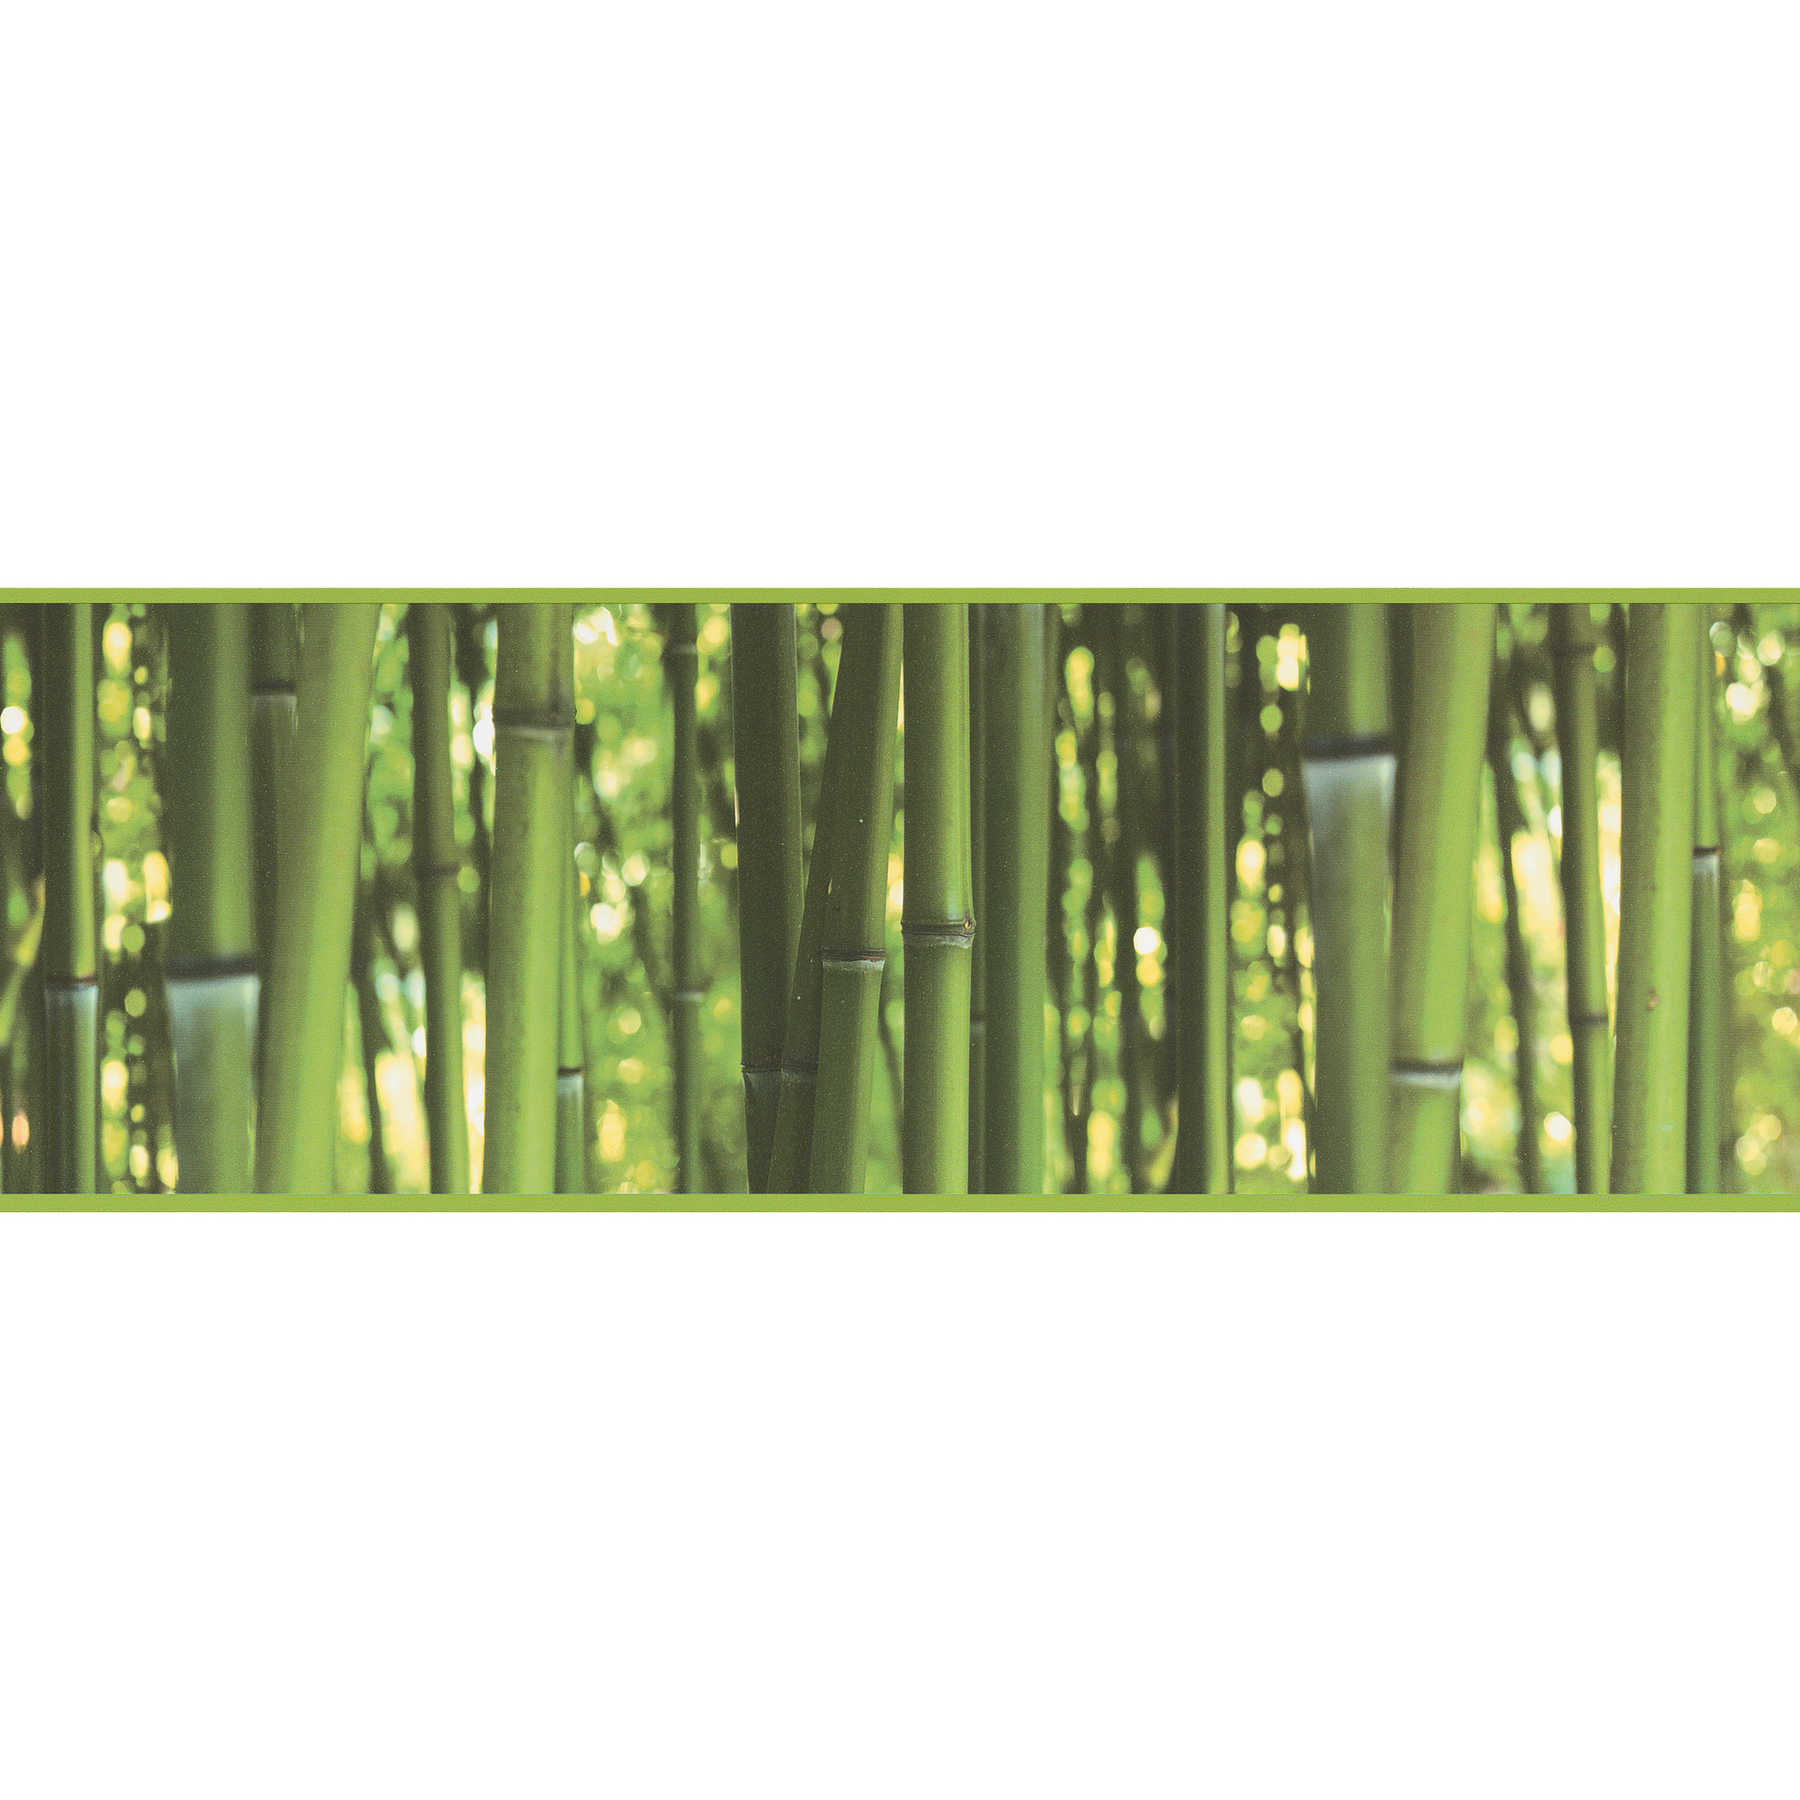         Selbstklebende Tapetenbordüre Bambus Wald – Grün
    